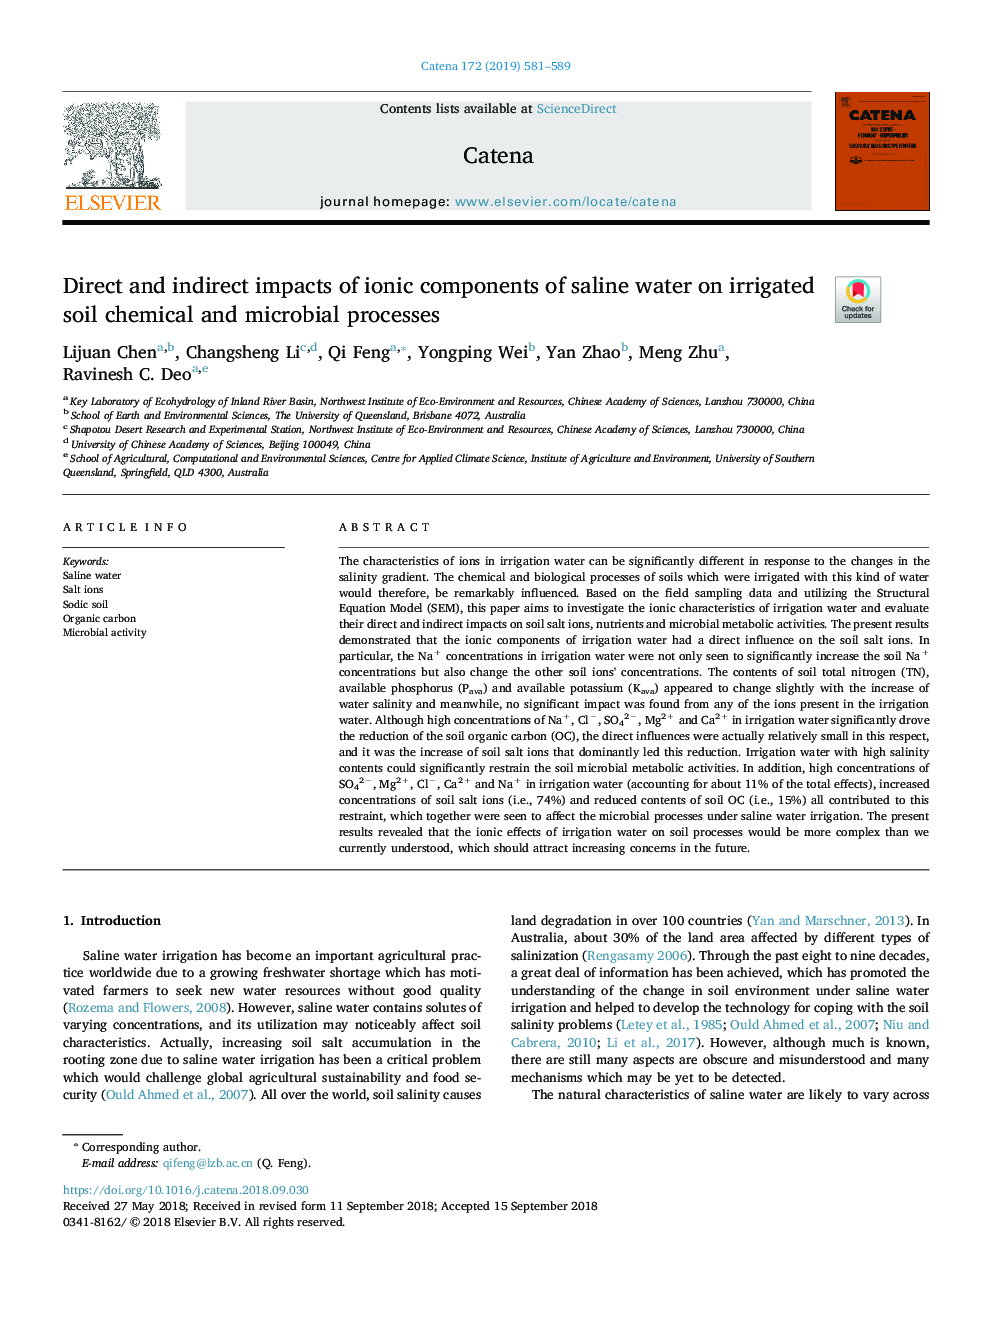 اثرات مستقیم و غیر مستقیم اجزای یونی آب شور بر روی فرآیندهای شیمیایی و میکروبی خاک آبی